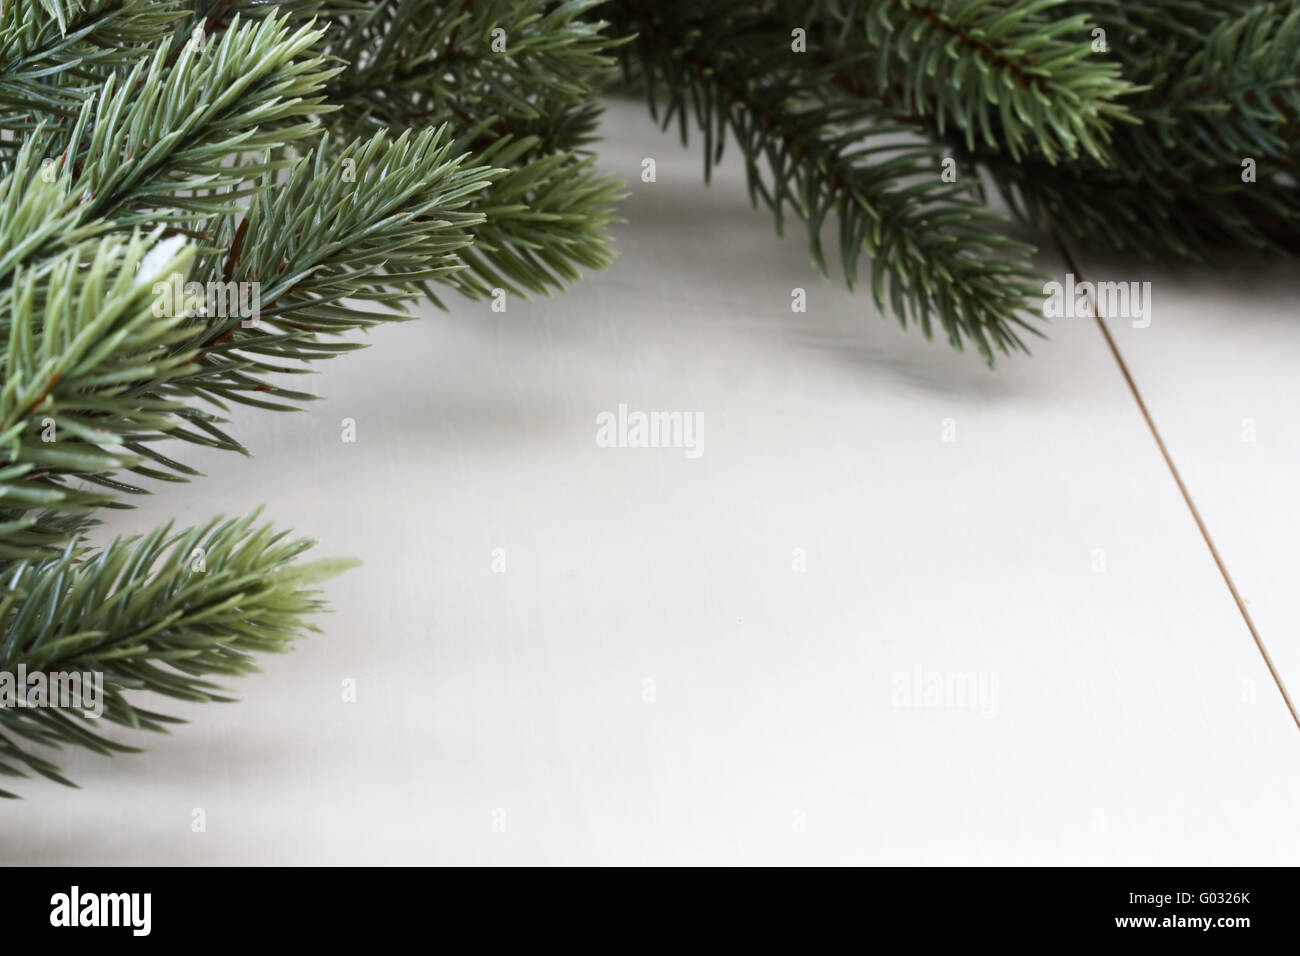 Weihnachtshintergrund mit Tannenzweigen - Christmas background with fir boughs Stock Photo